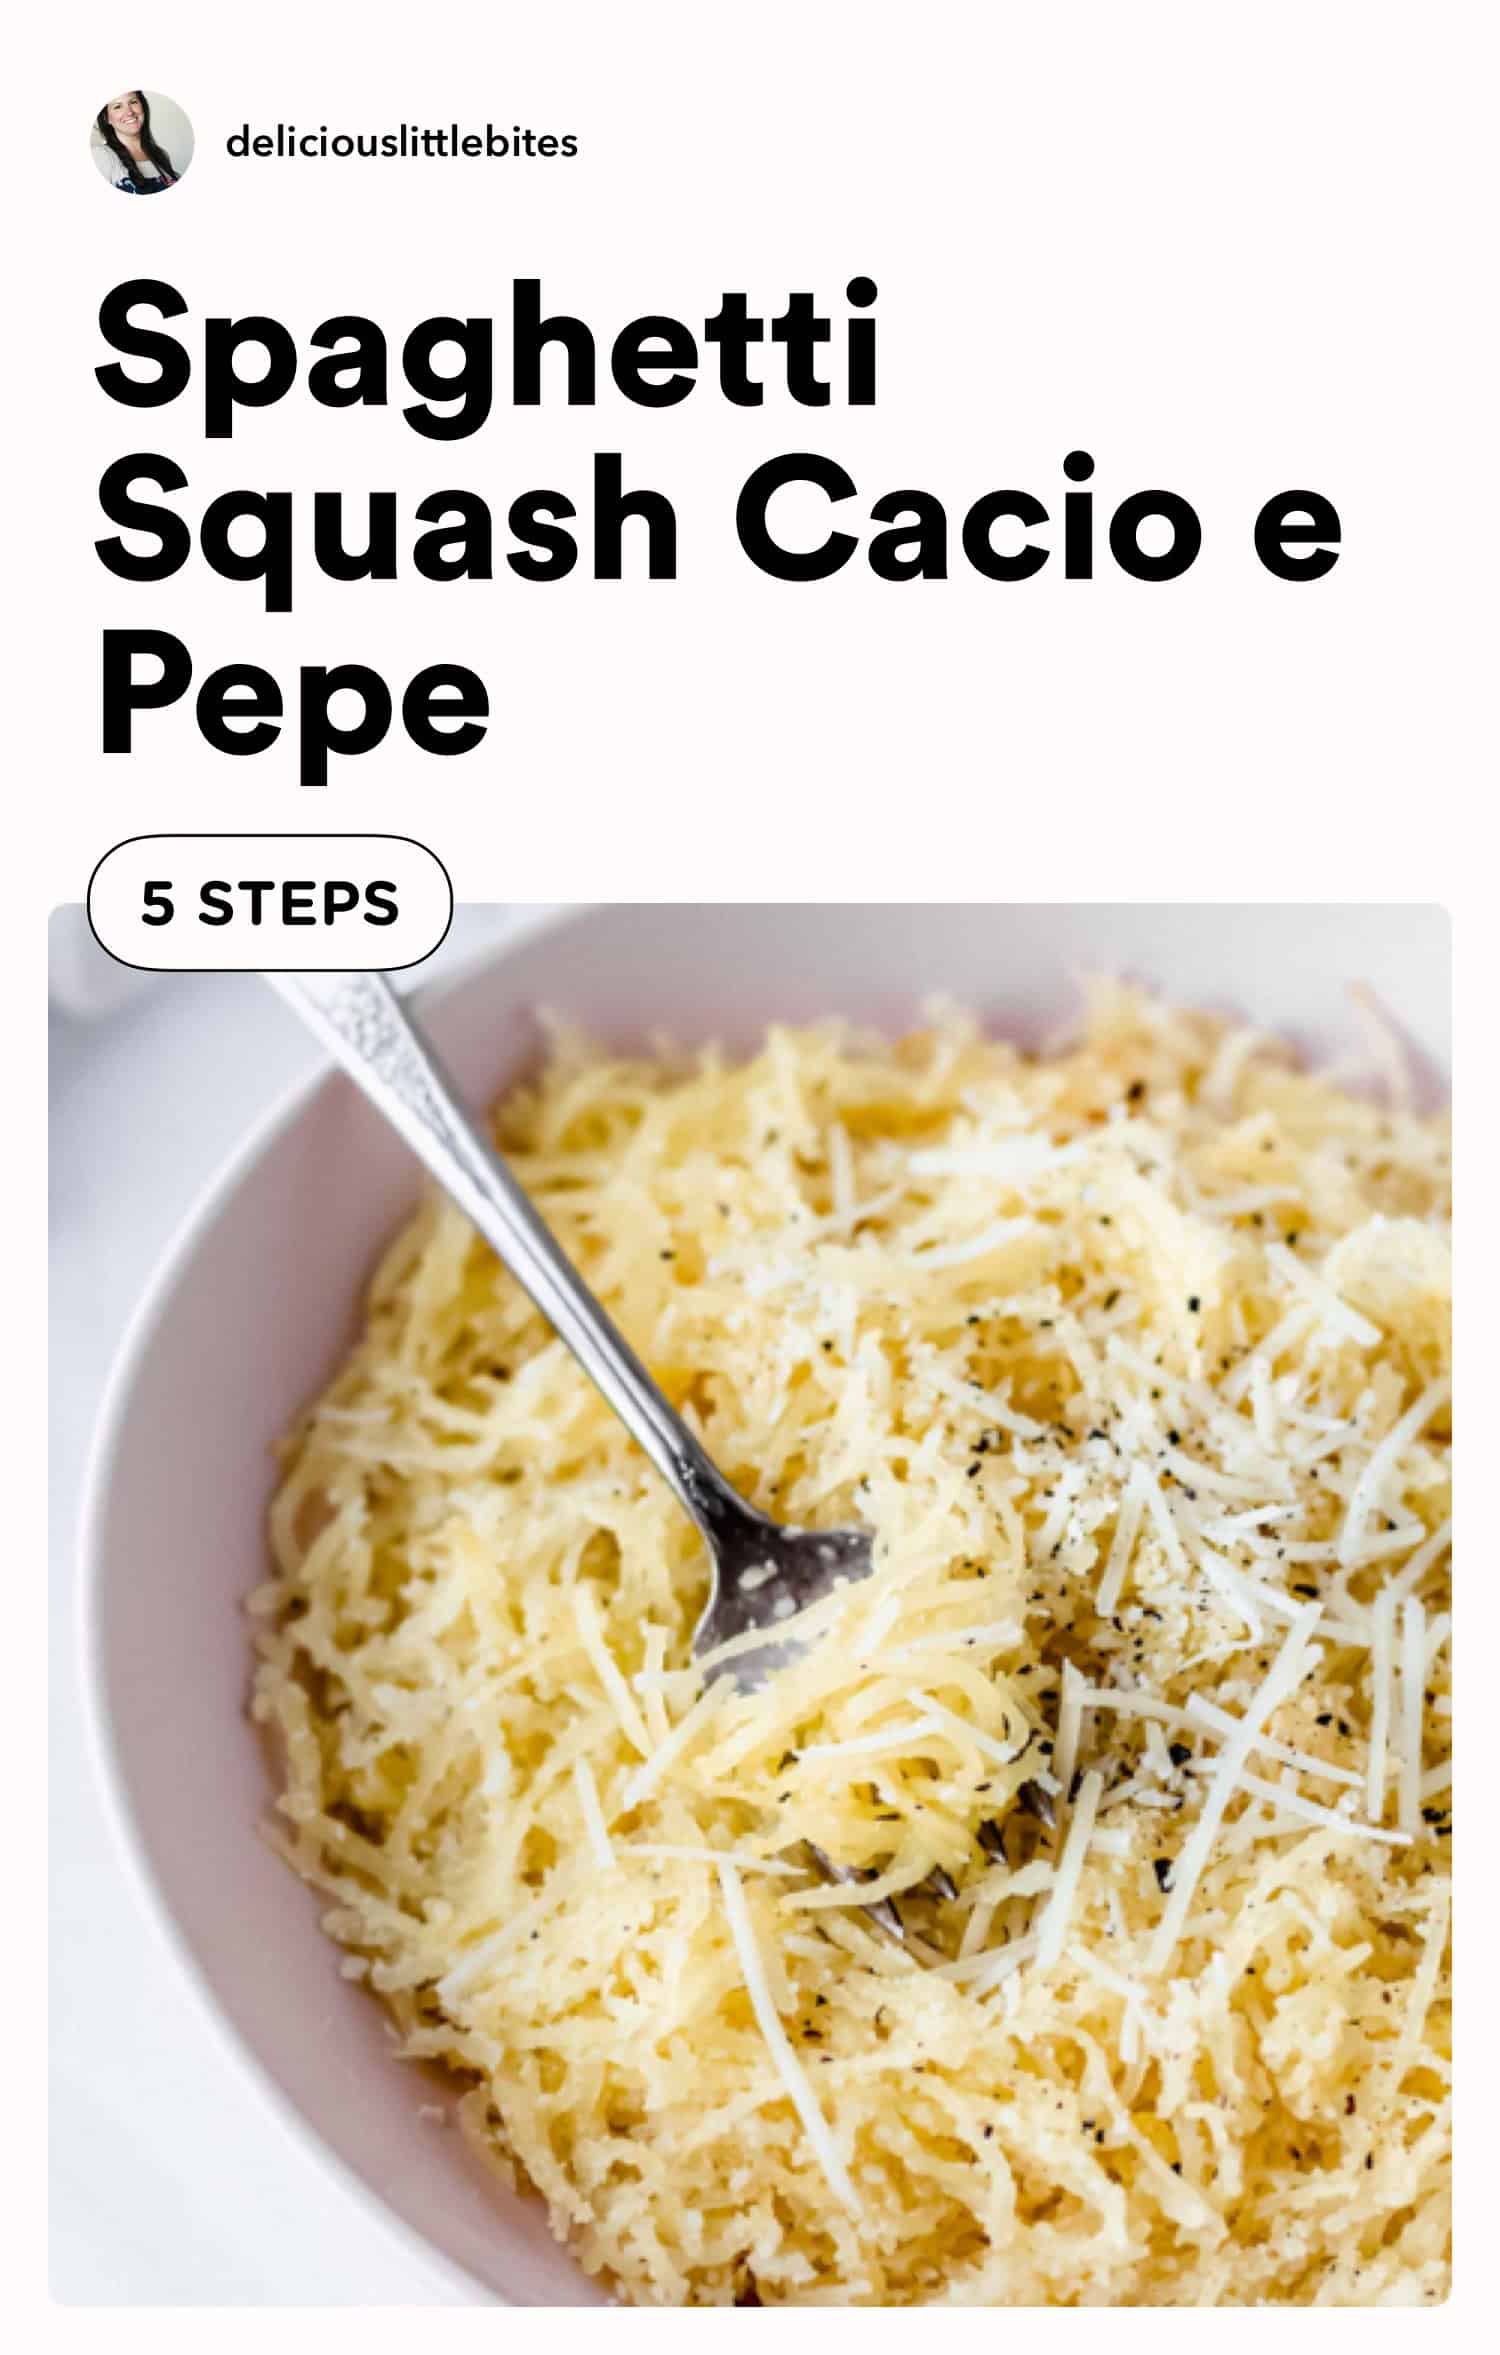 Spaghetti Squash Cacio e Pepe (Keto + Gluten Free) - Delicious Little Bites